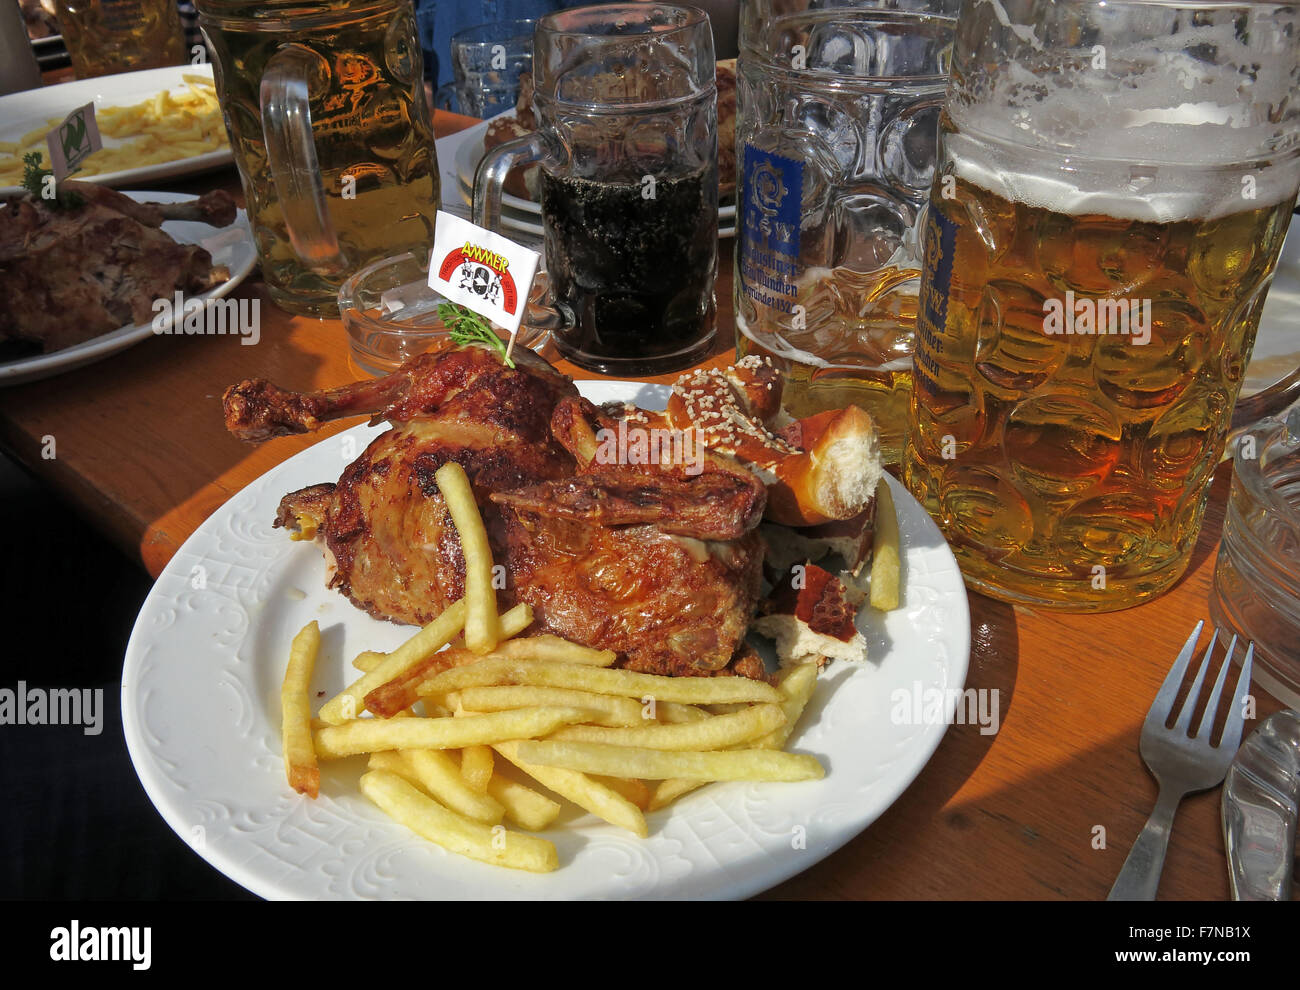 Festival de la bière Oktoberfest steins et l'alimentation, la moitié poulet & fries, Munich, Allemagne Banque D'Images